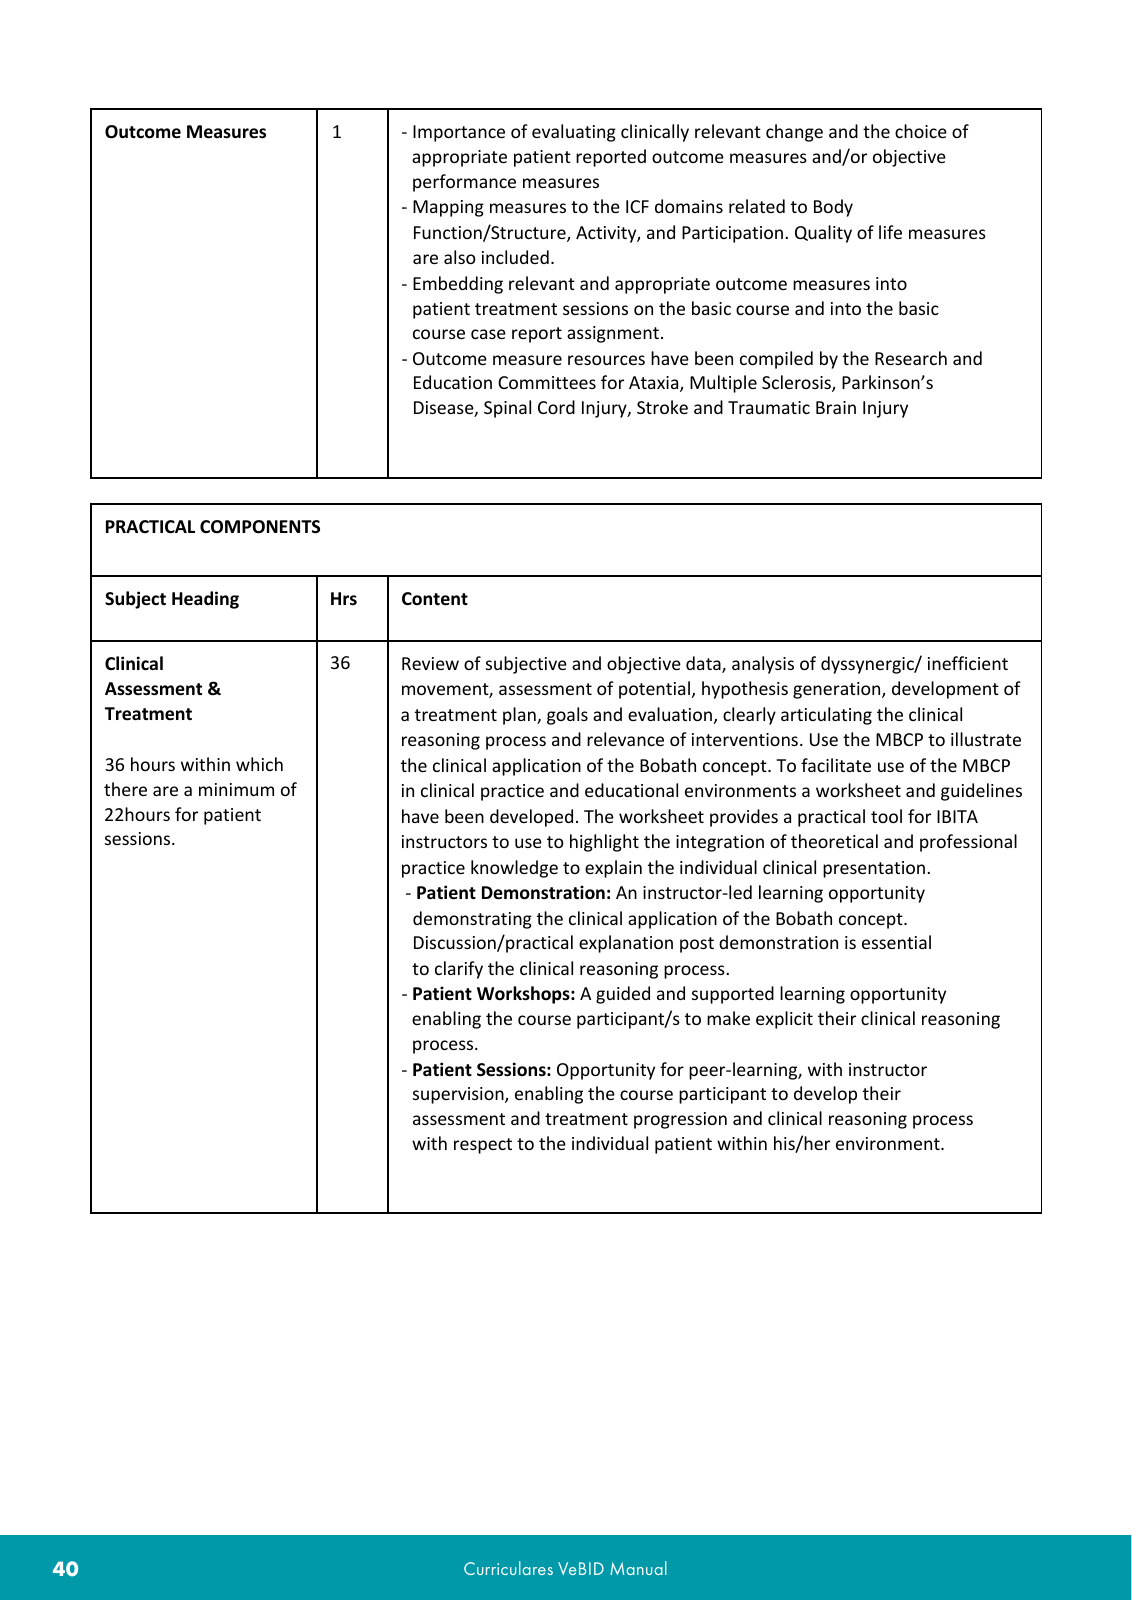 Vorschau VeBID Curriculum 2022 Seite 40